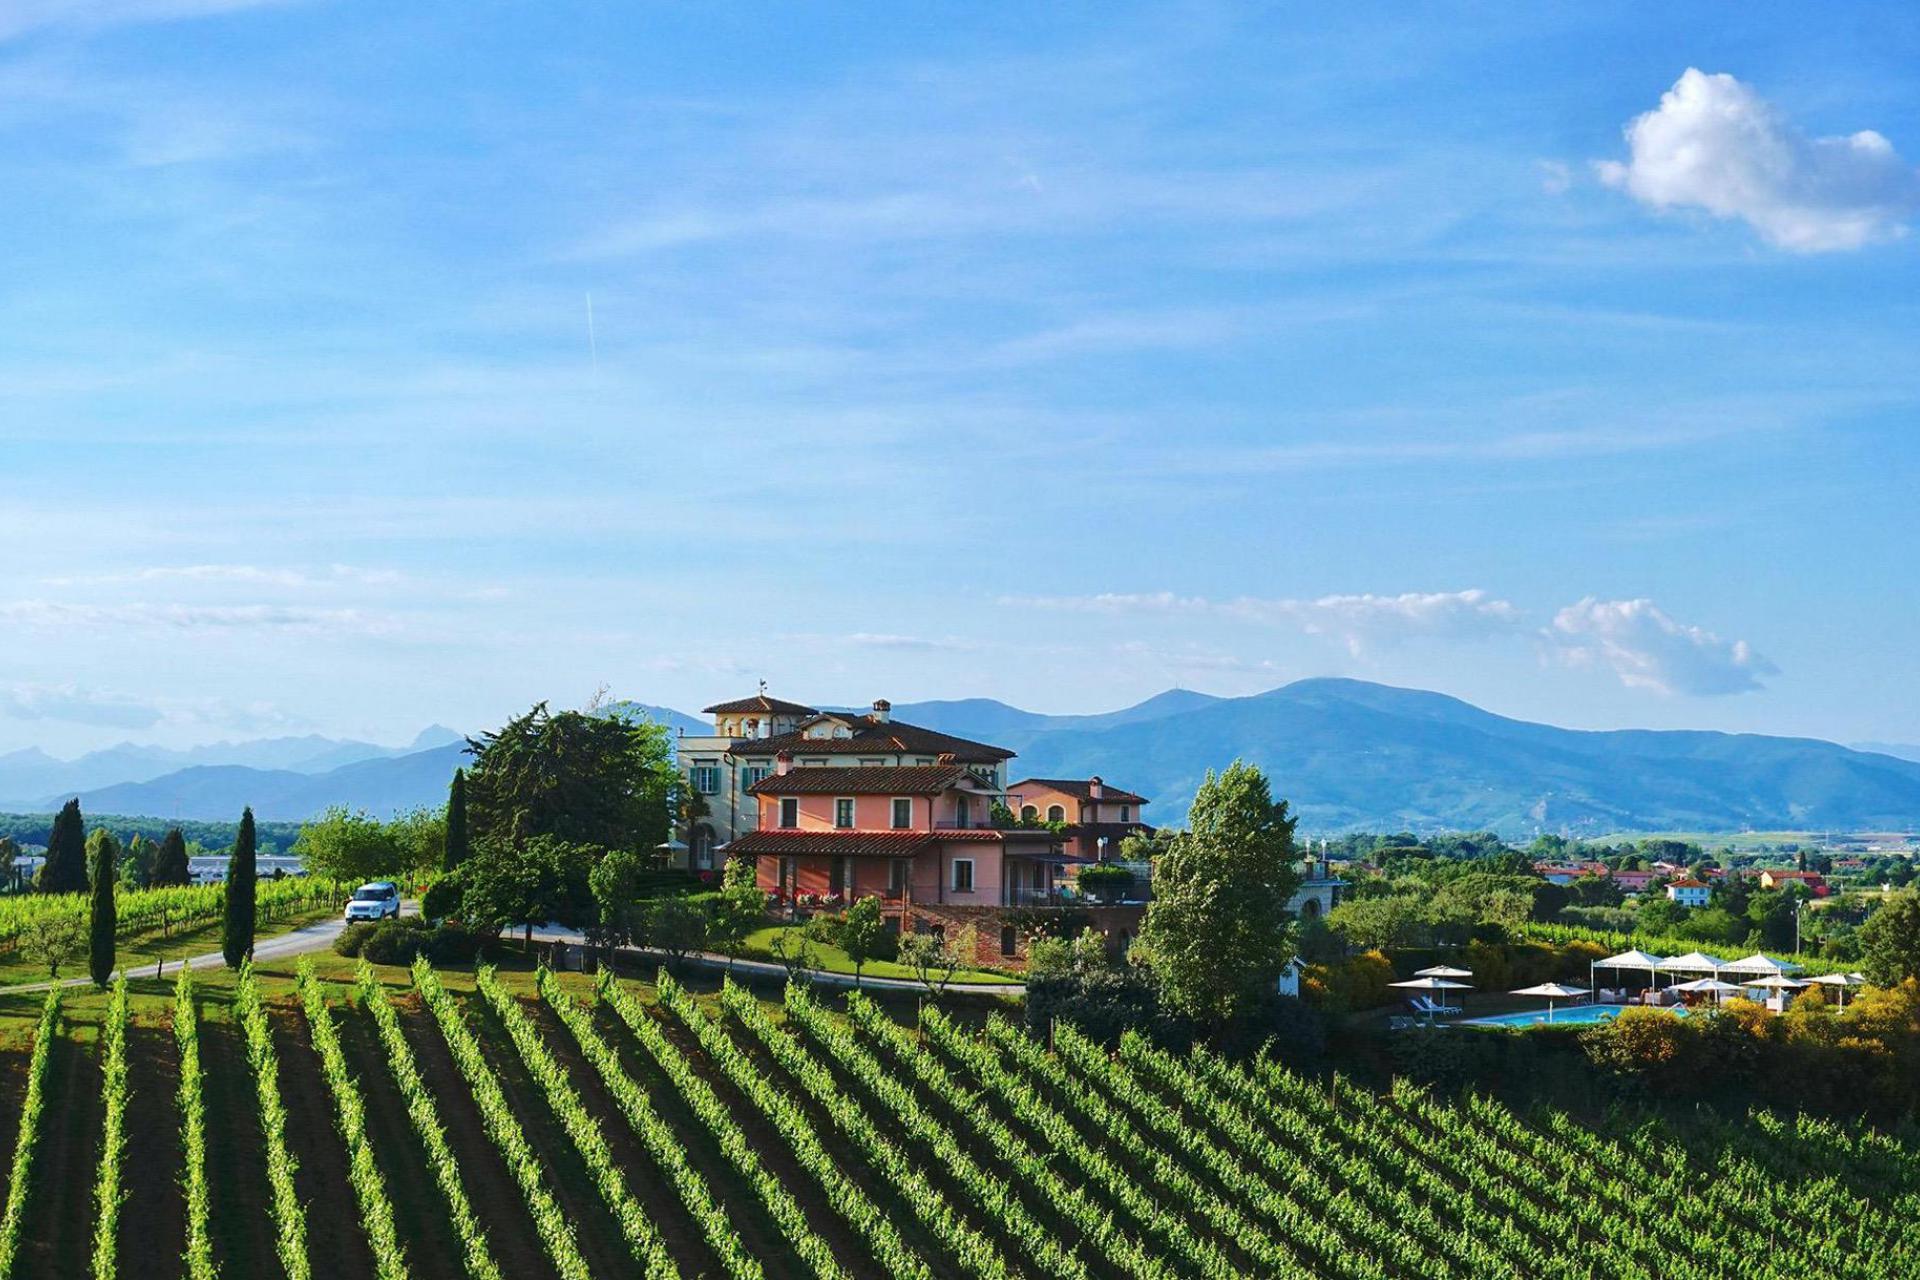 Luxe wijnboerderij in Toscane